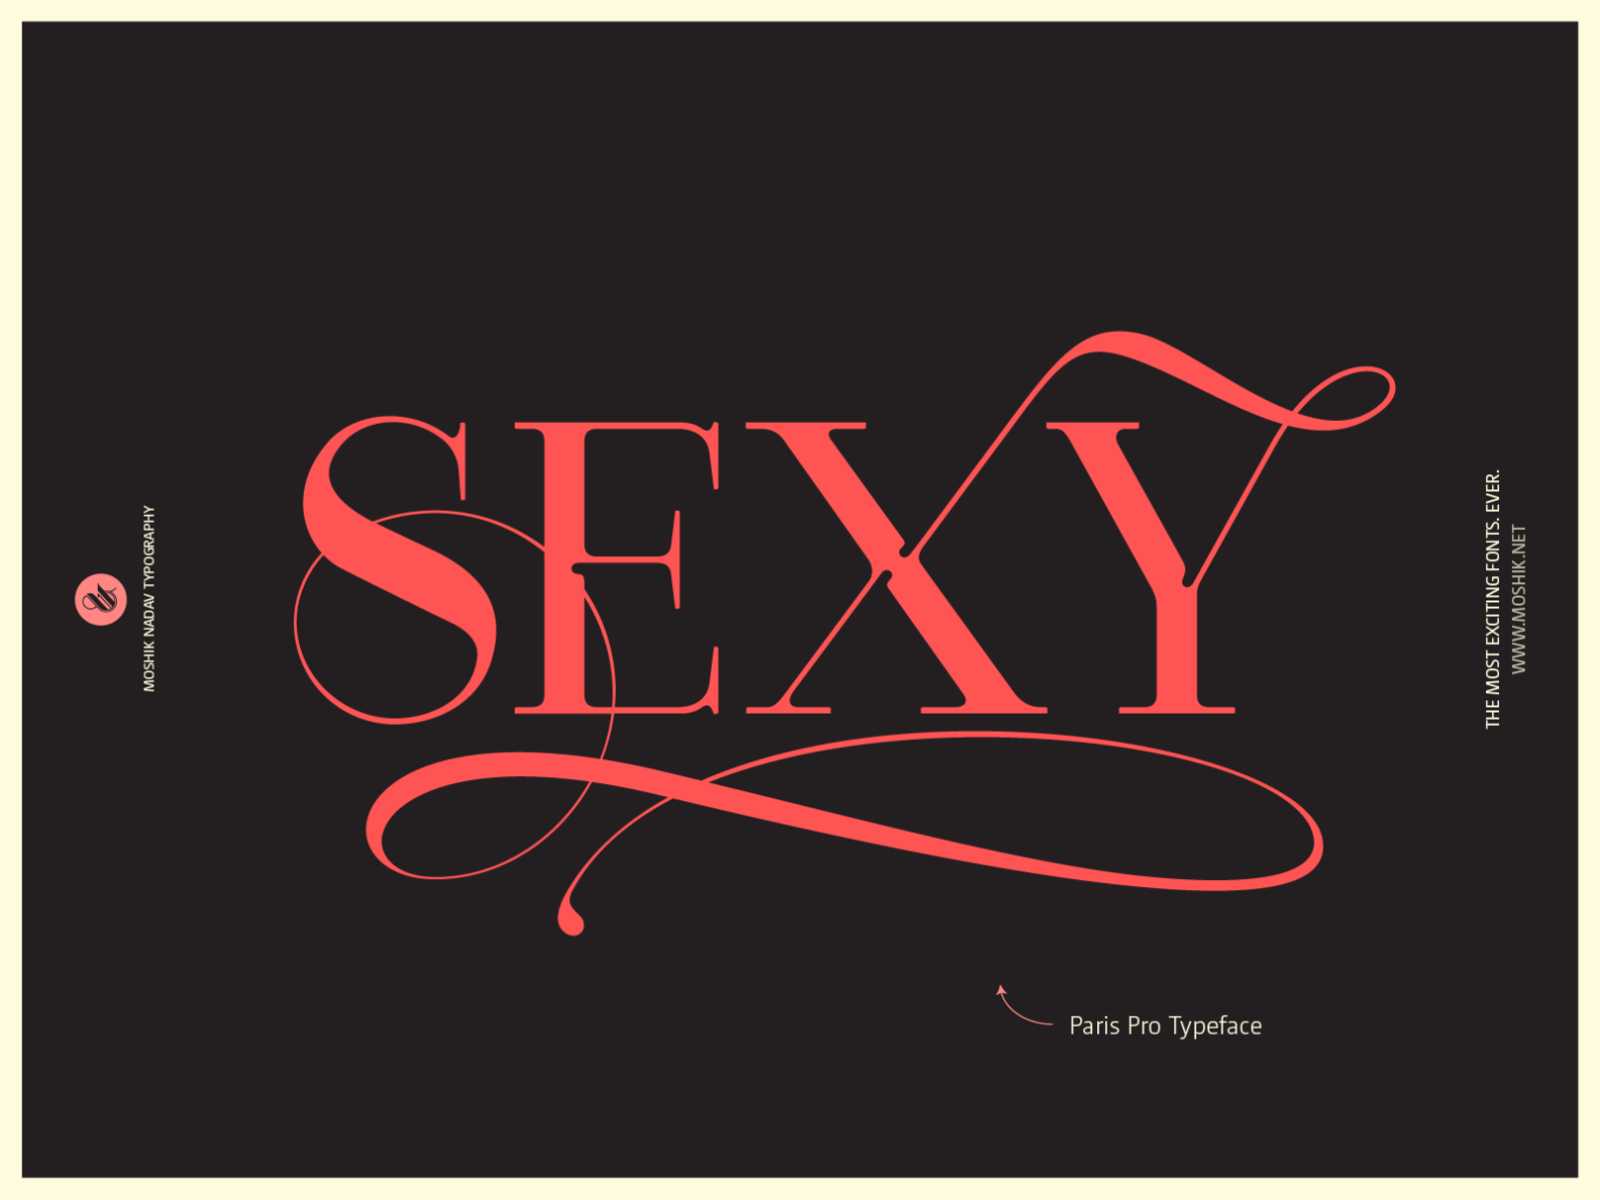 Sexy Typography By Moshik Nadav By Moshik Nadav Typography On Dribbble 5424